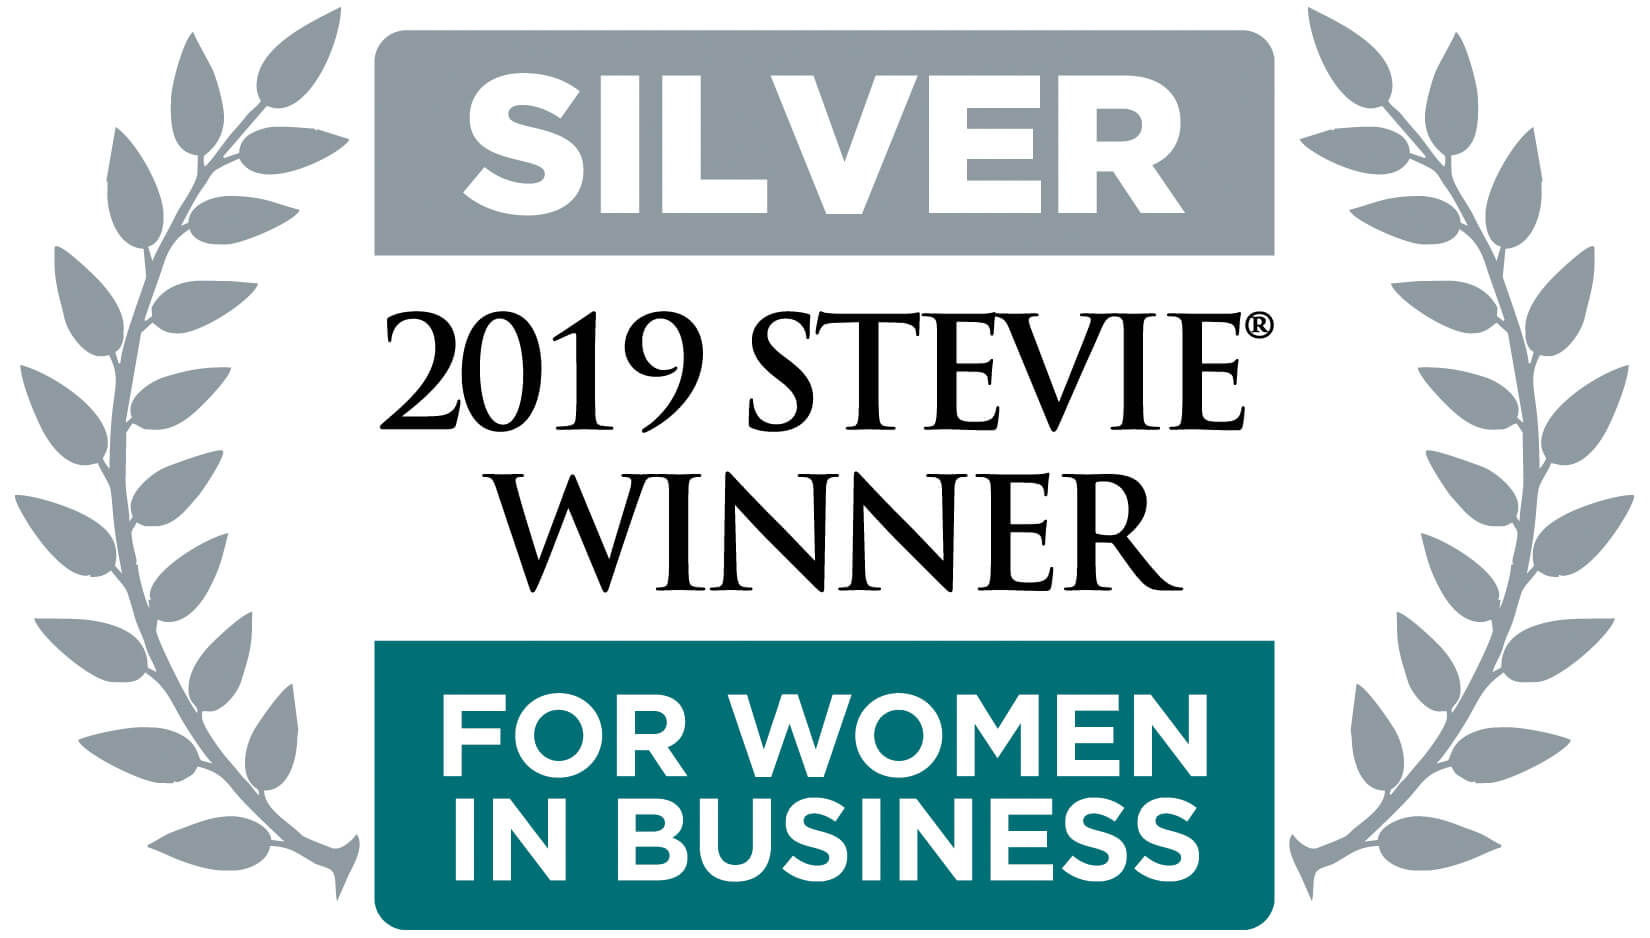 2019 Silver Stevie Winner logo